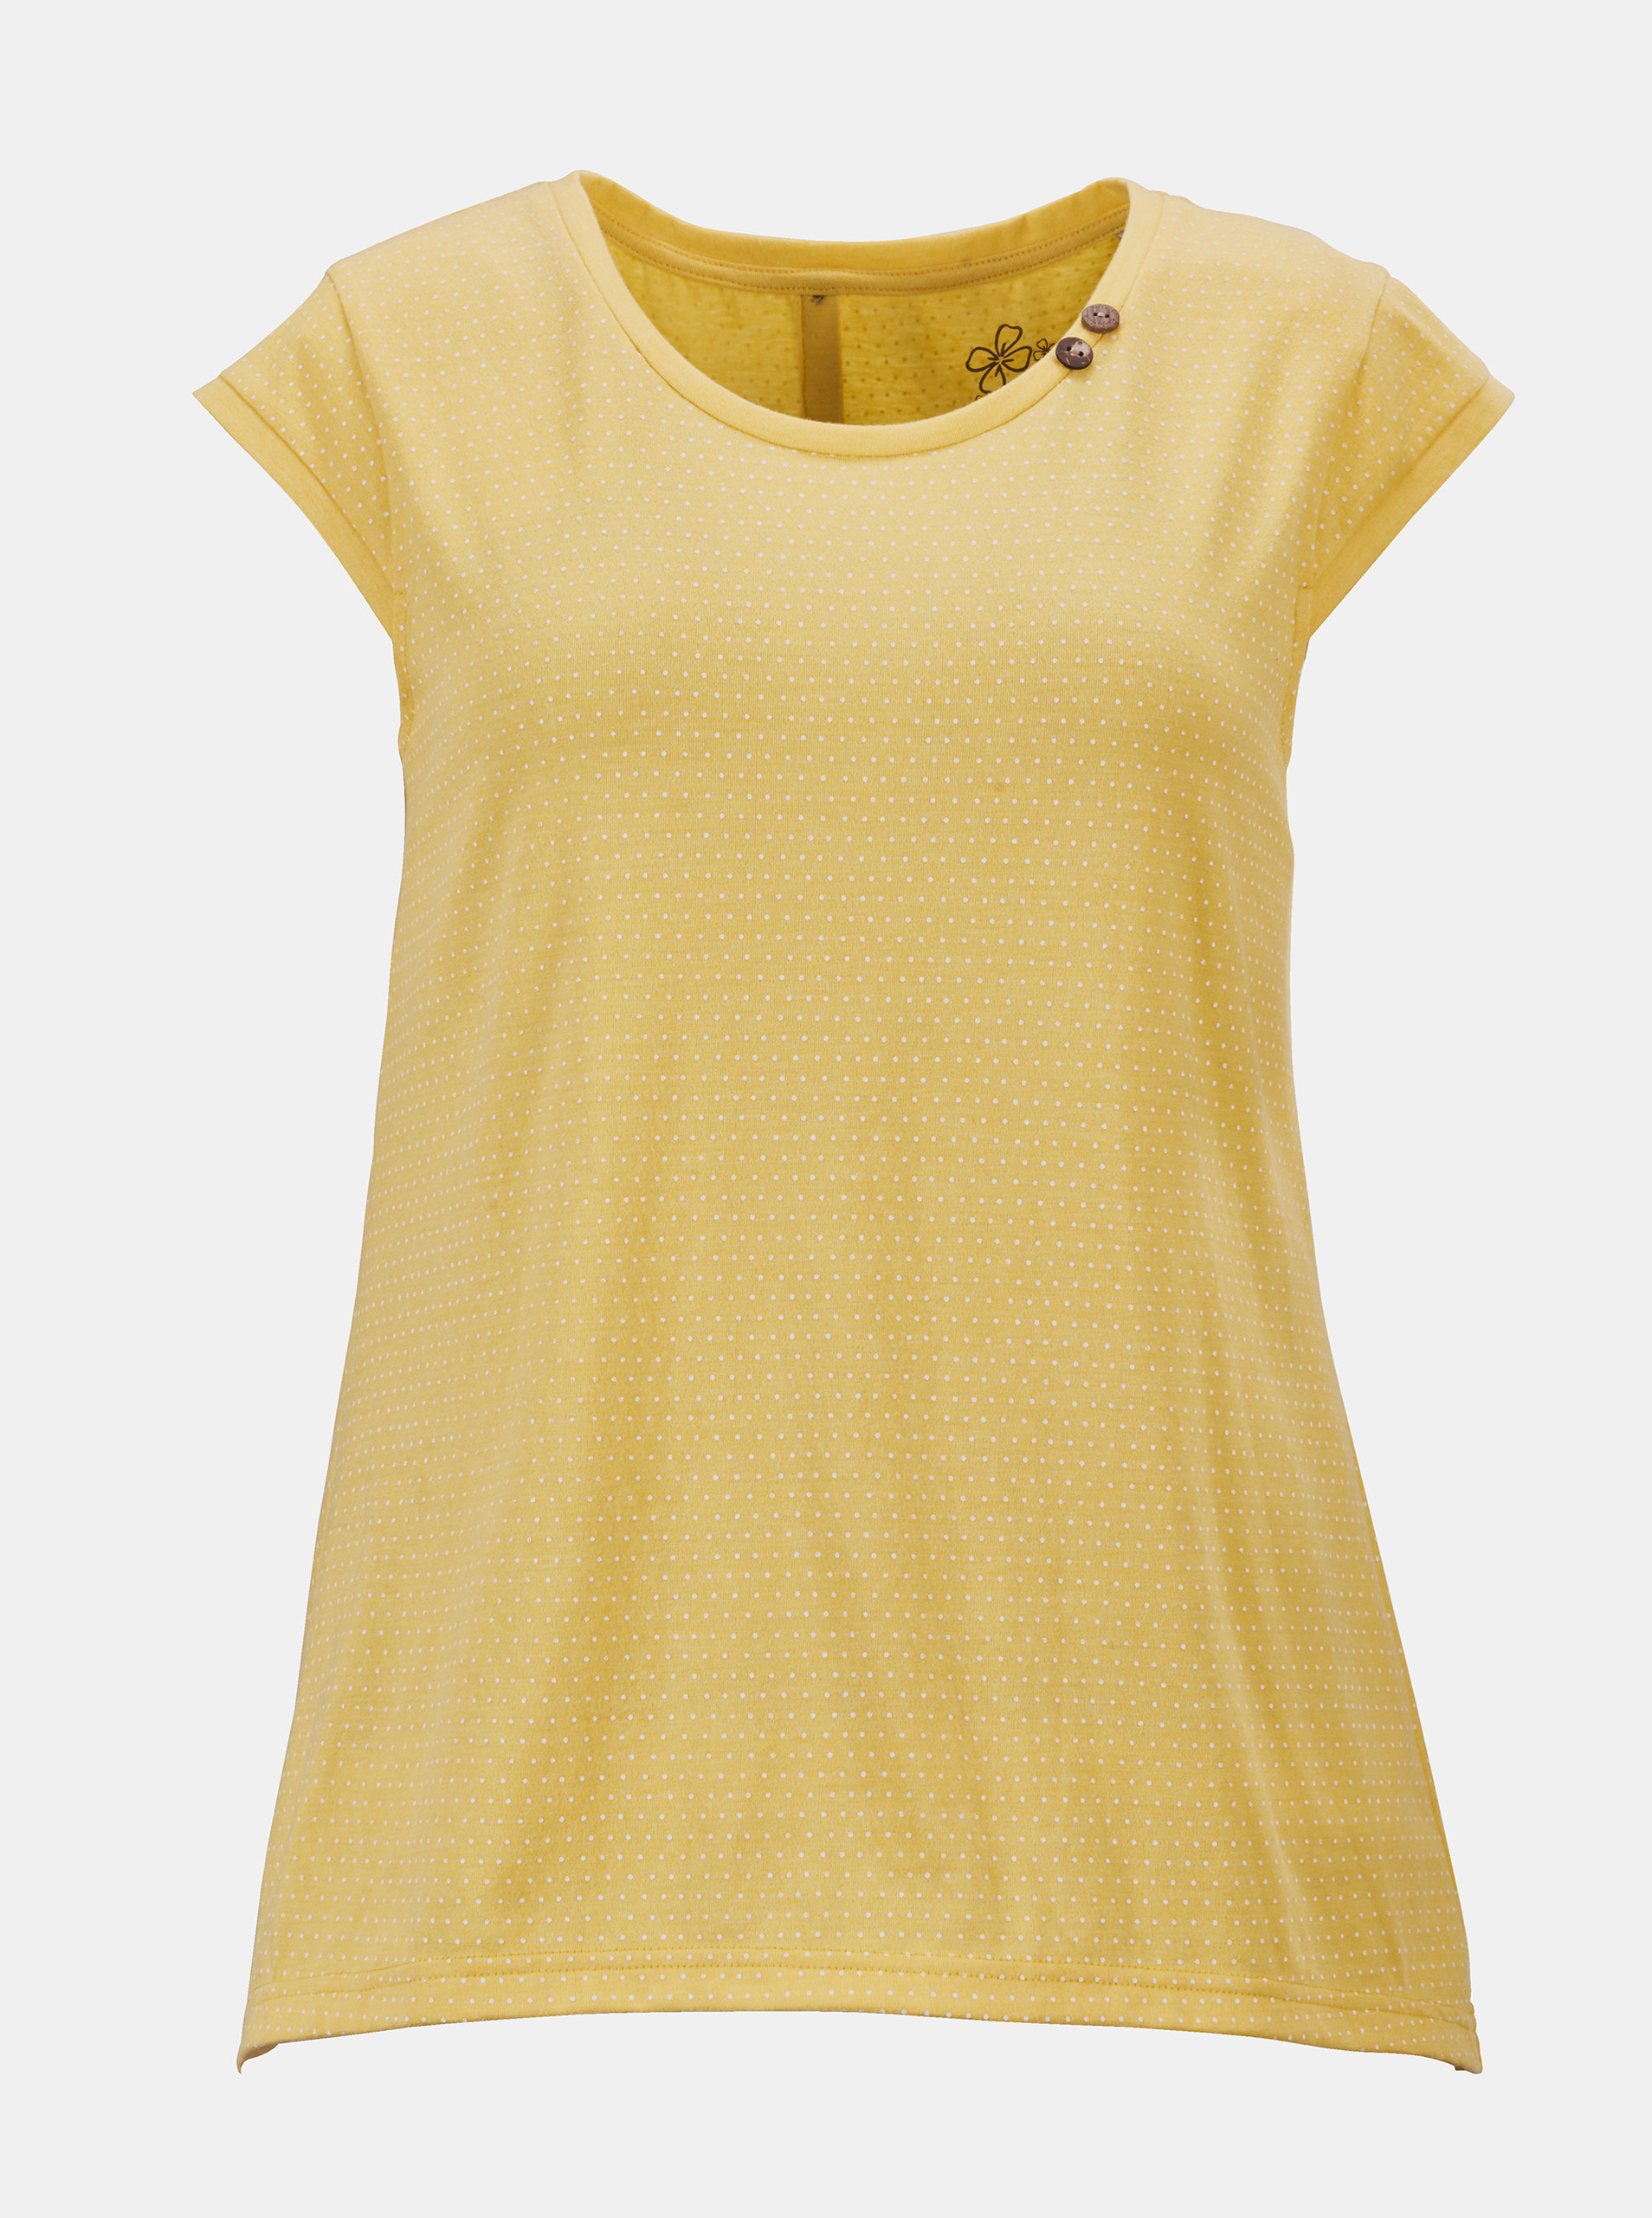 Fotografie Žluté dámské tričko s knoflíky na zádech killtec